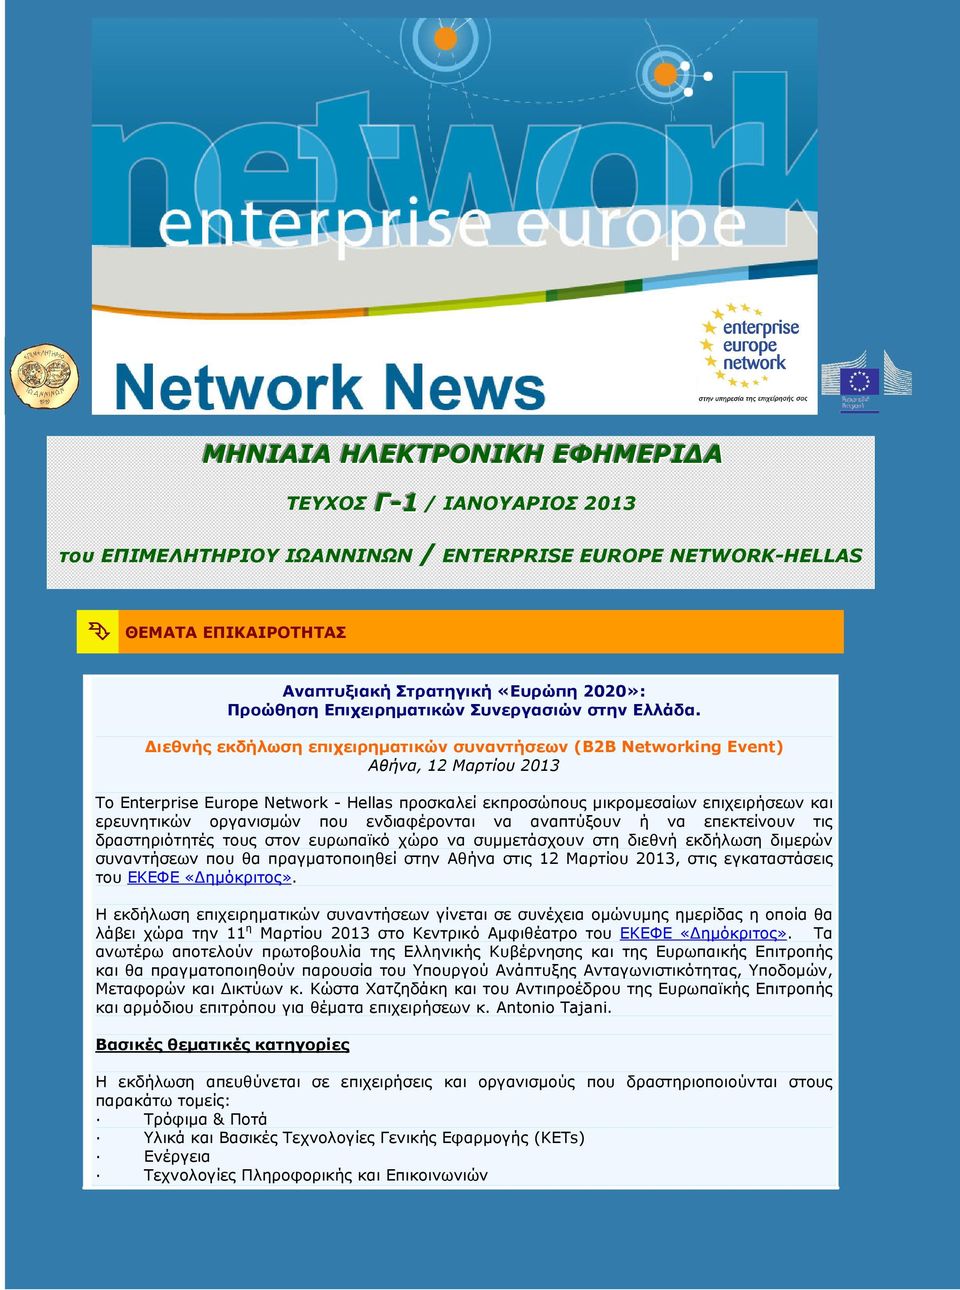 ιεθνής εκδήλωση επιχειρηµατικών συναντήσεων (B2B Networking Event) Αθήνα, 12 Μαρτίου 2013 Το Enterprise Europe Network - Hellas προσκαλεί εκπροσώπους µικροµεσαίων επιχειρήσεων και ερευνητικών